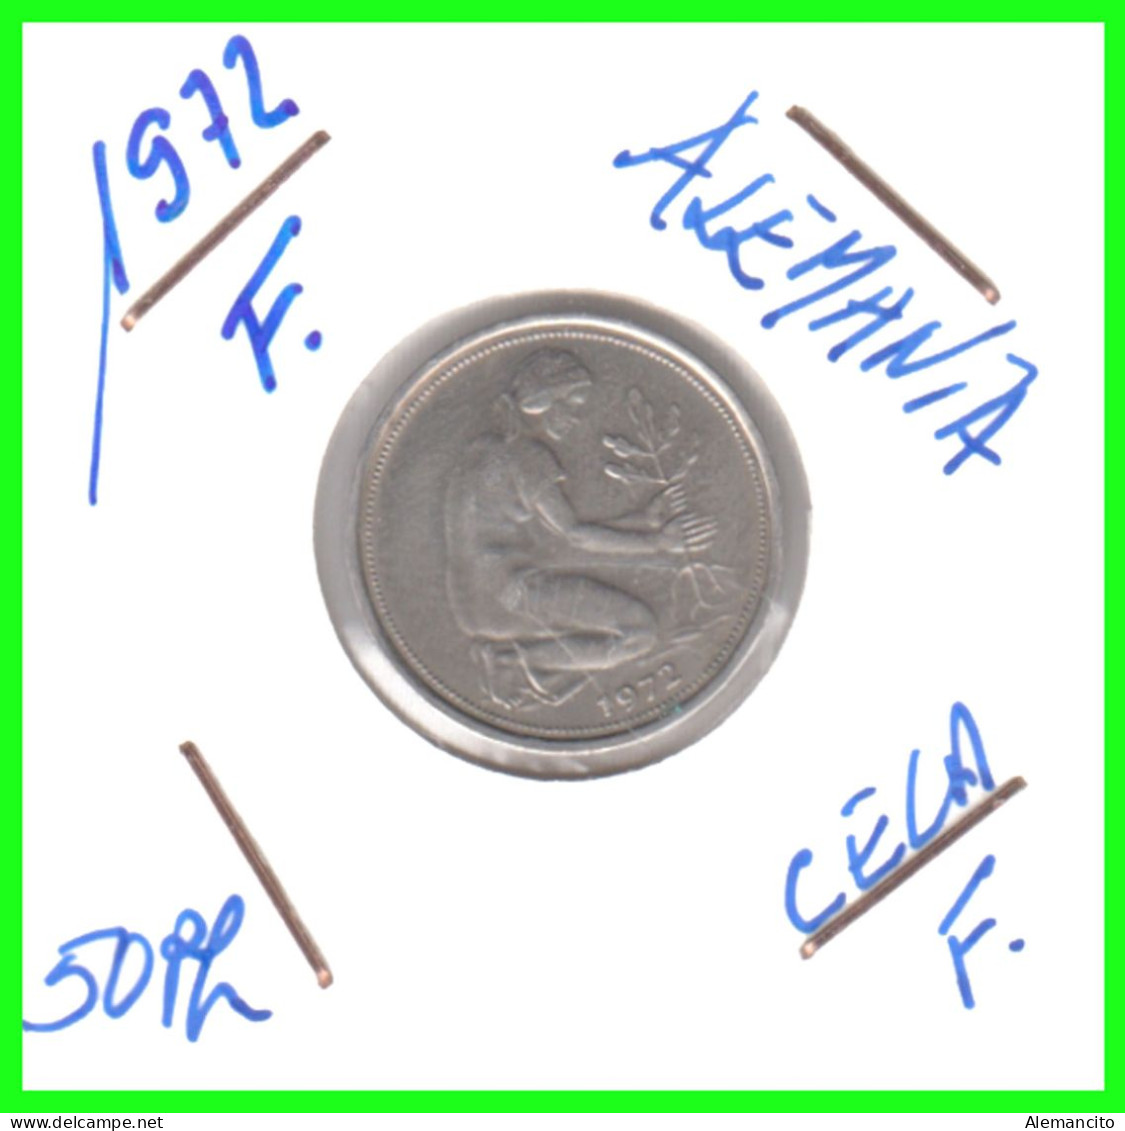 ALEMANIA - DEUTSCHLAND - GERMANY-MONEDA DE LA REPUBLICA FEDERAL DE ALEMIANIA DE 50 Pfn .DEL AÑO 1972 CECA - F -STUTTGART - 50 Pfennig